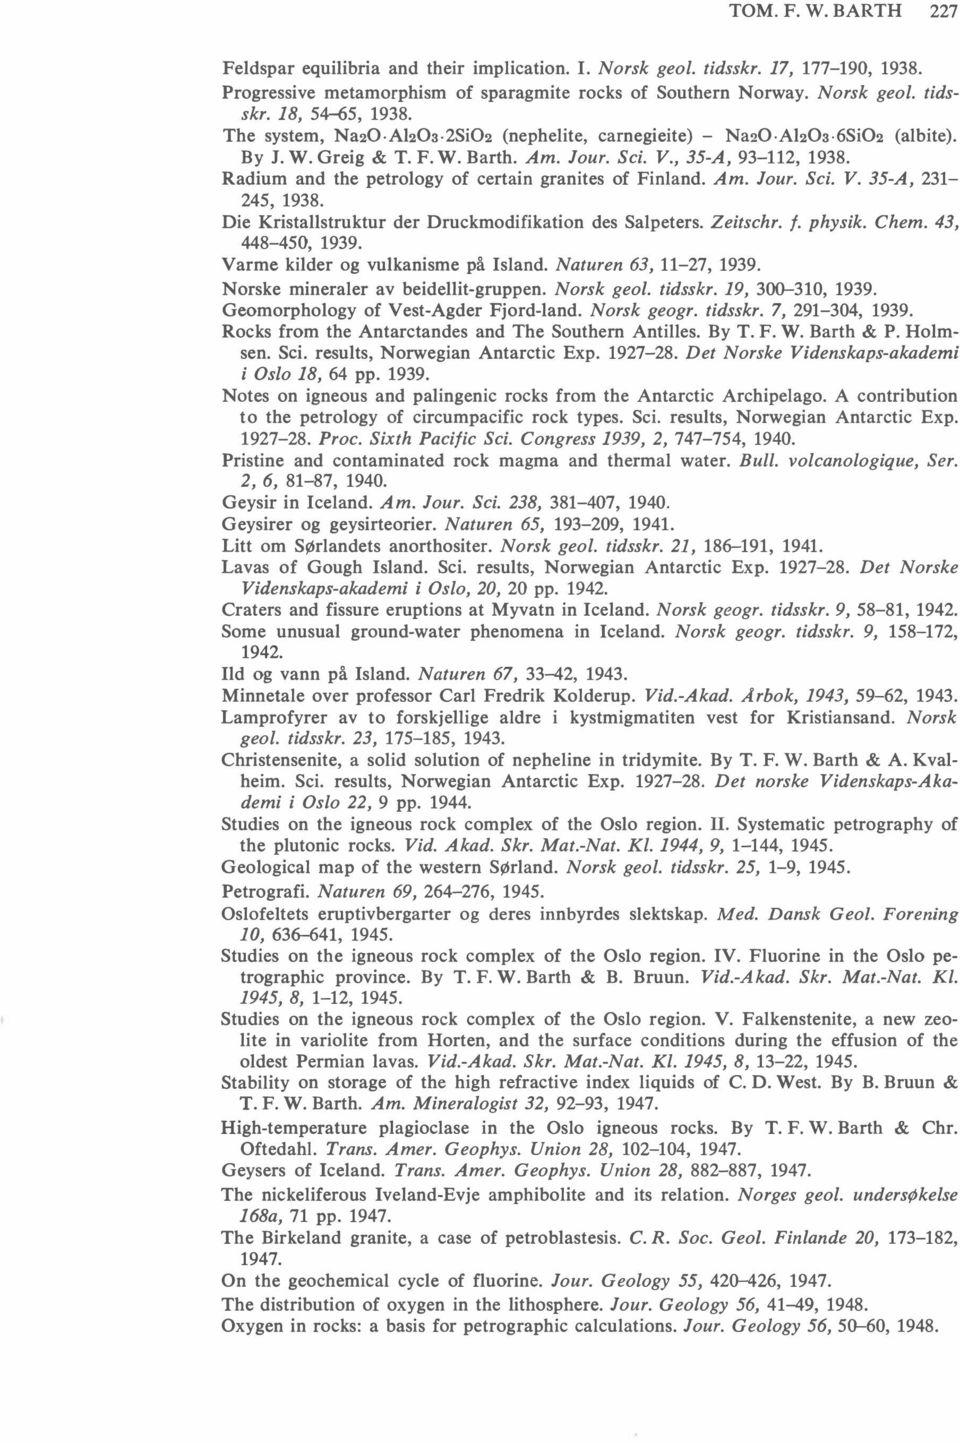 Radium and the petrology of certain granites of Finland. Am. Jour. Sei. V. 35-A, 231-245, 1938. Die Kristallstruktur der Druckmodifikation des Salpeters. Zeitschr. f. physik. Chem. 43, 448-450, 1939.